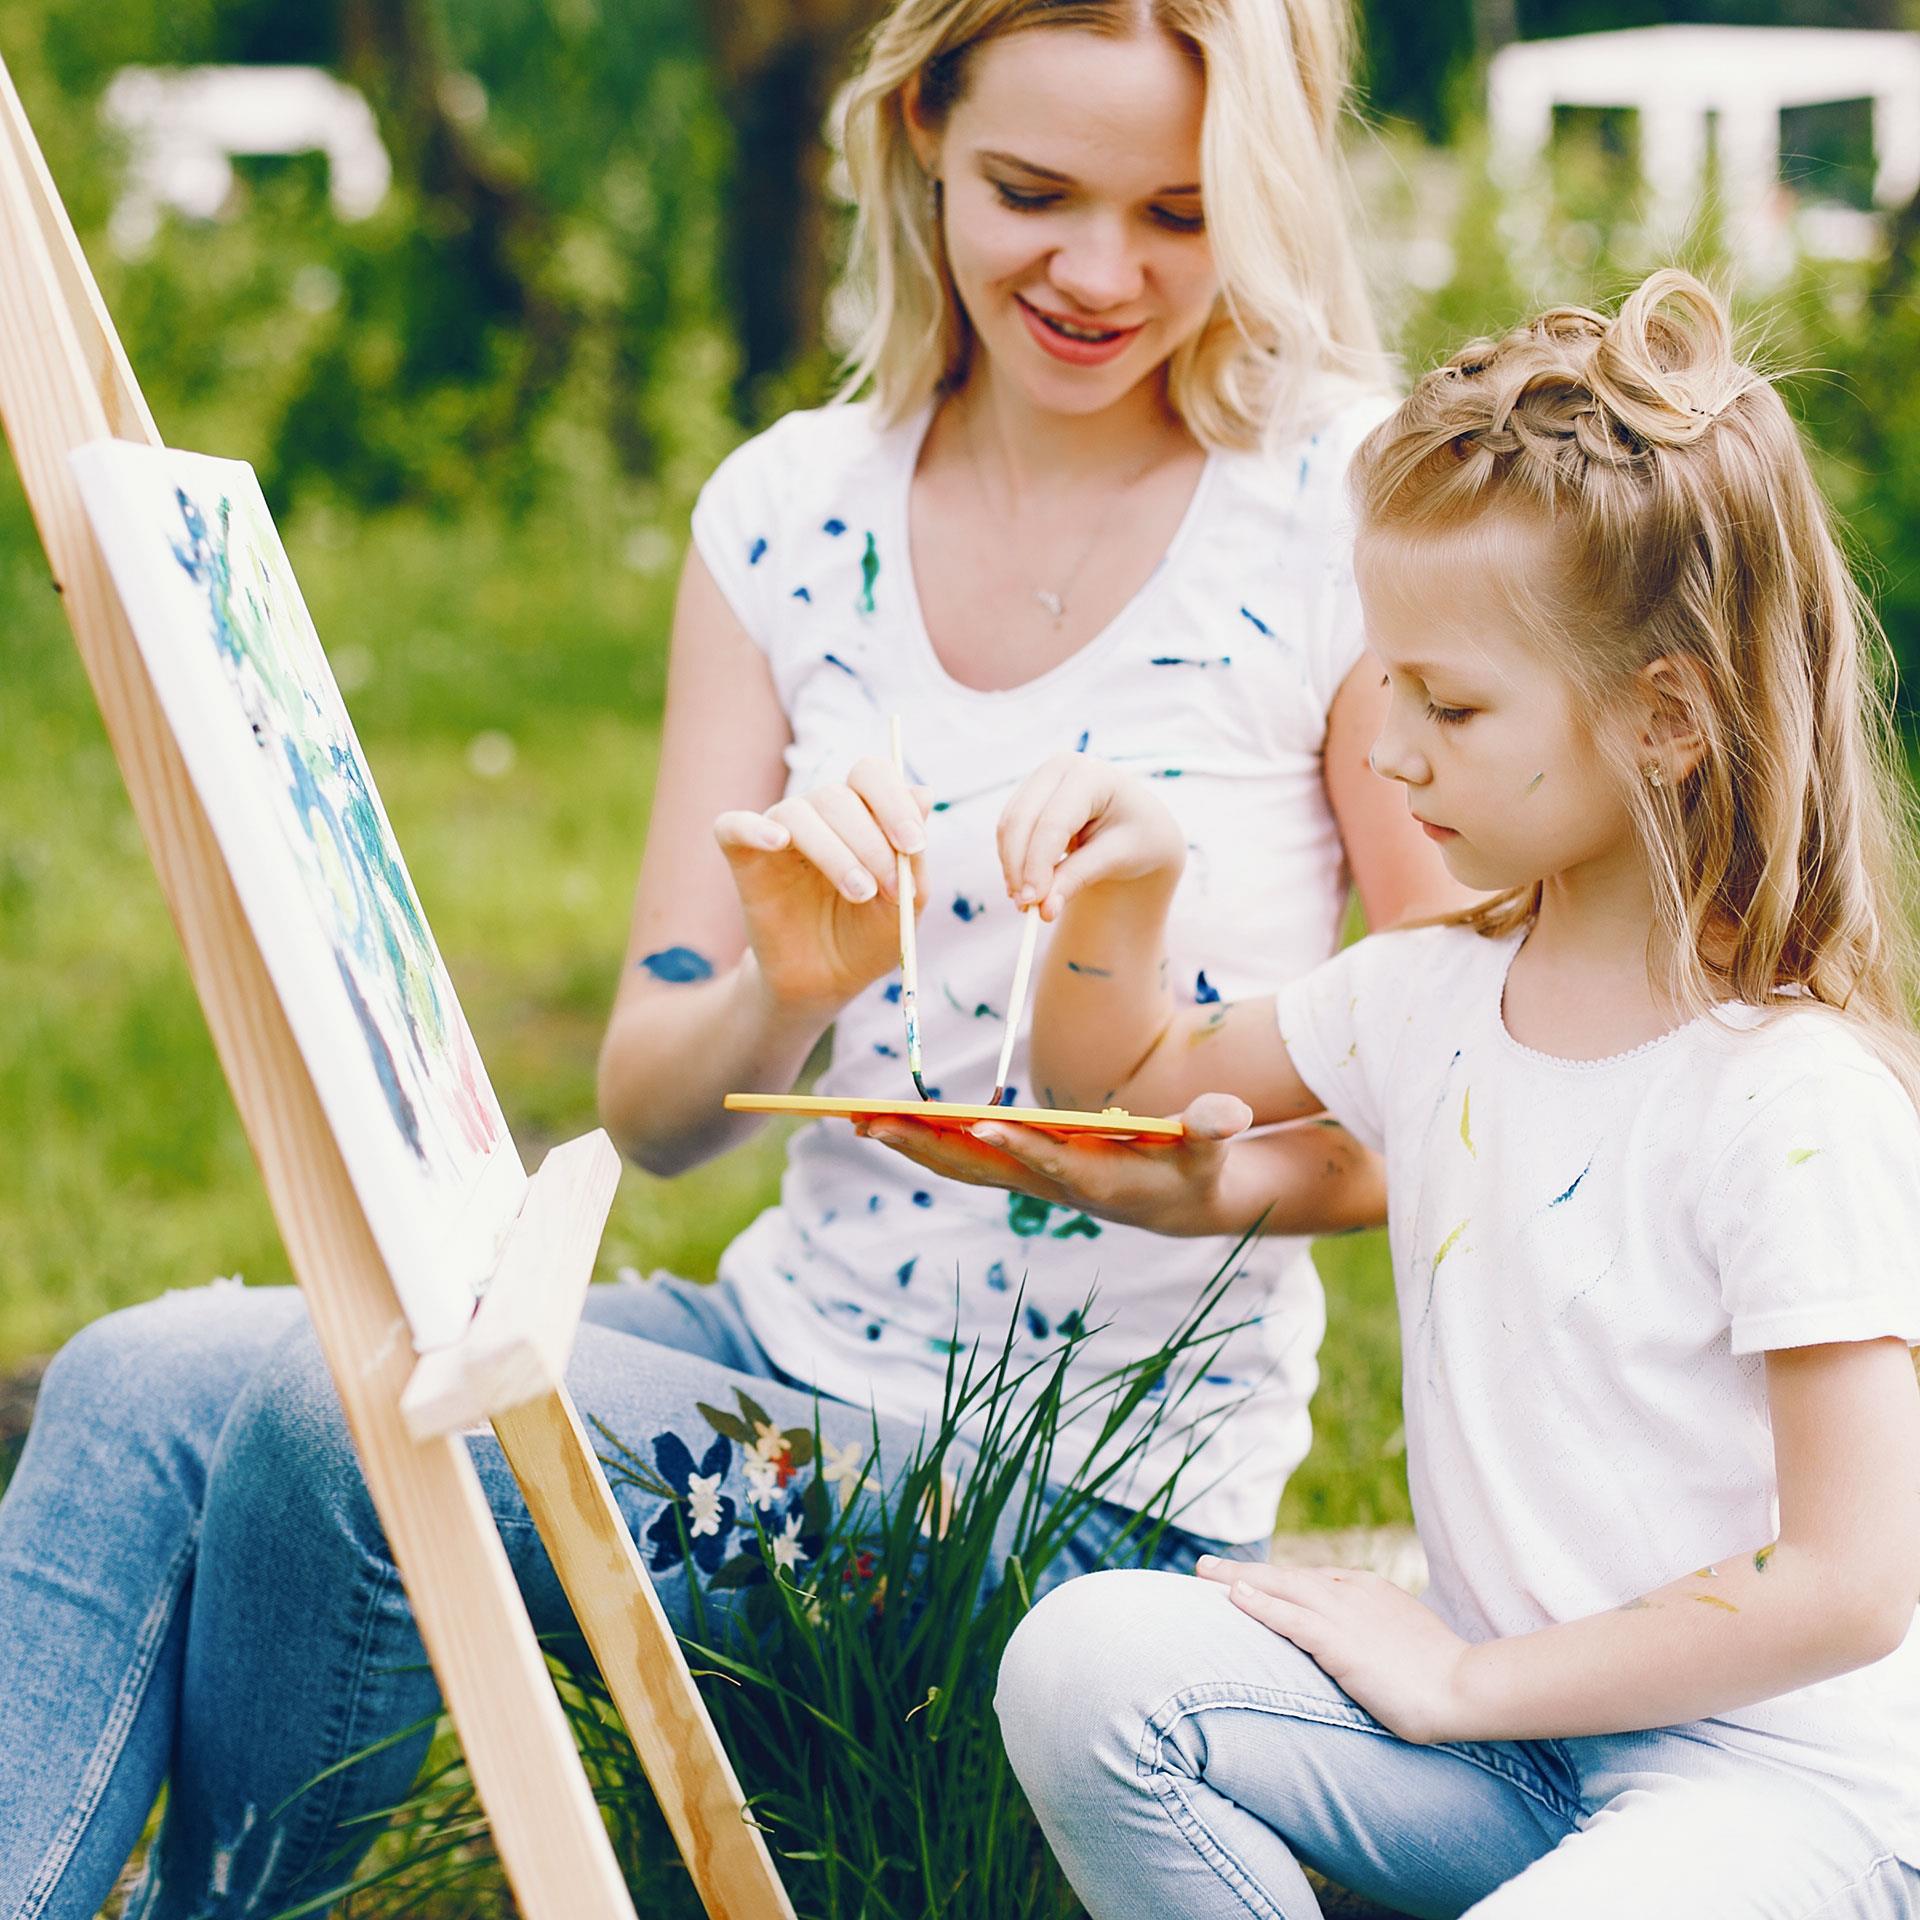 Événement de peinture sur toile pour parents/enfants